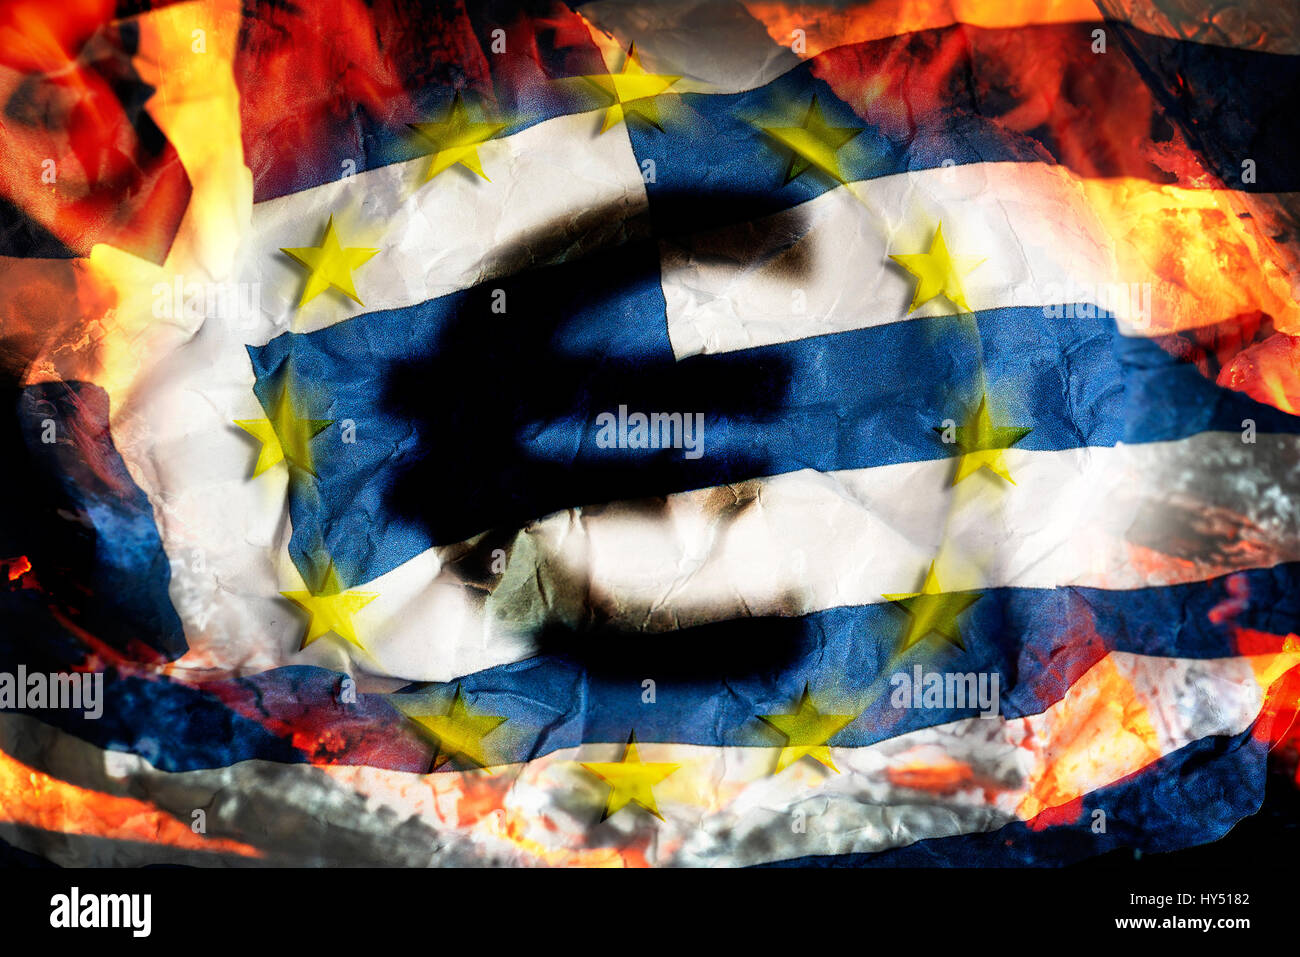 Greek flag with flames and eurosigns, symbolic photo debt quarrel, Griechische Fahne mit Flammen und Eurozeichen, Symbolfoto Schuldenstreit Stock Photo